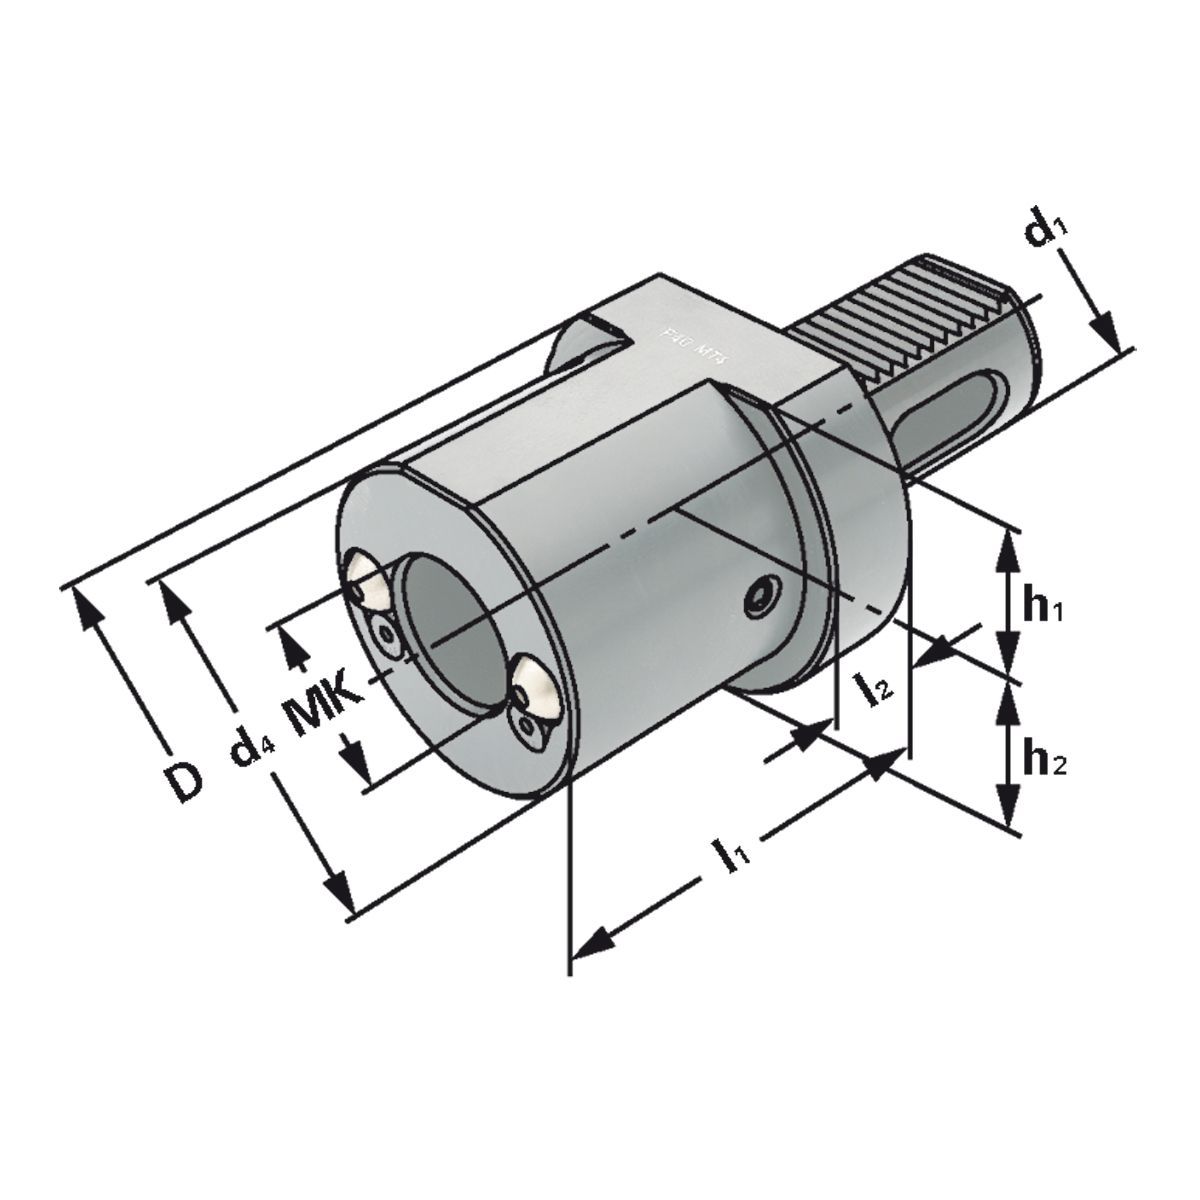 MK-Bohrerhalter F1-25xMK1 DIN 69880 (ISO 10889)